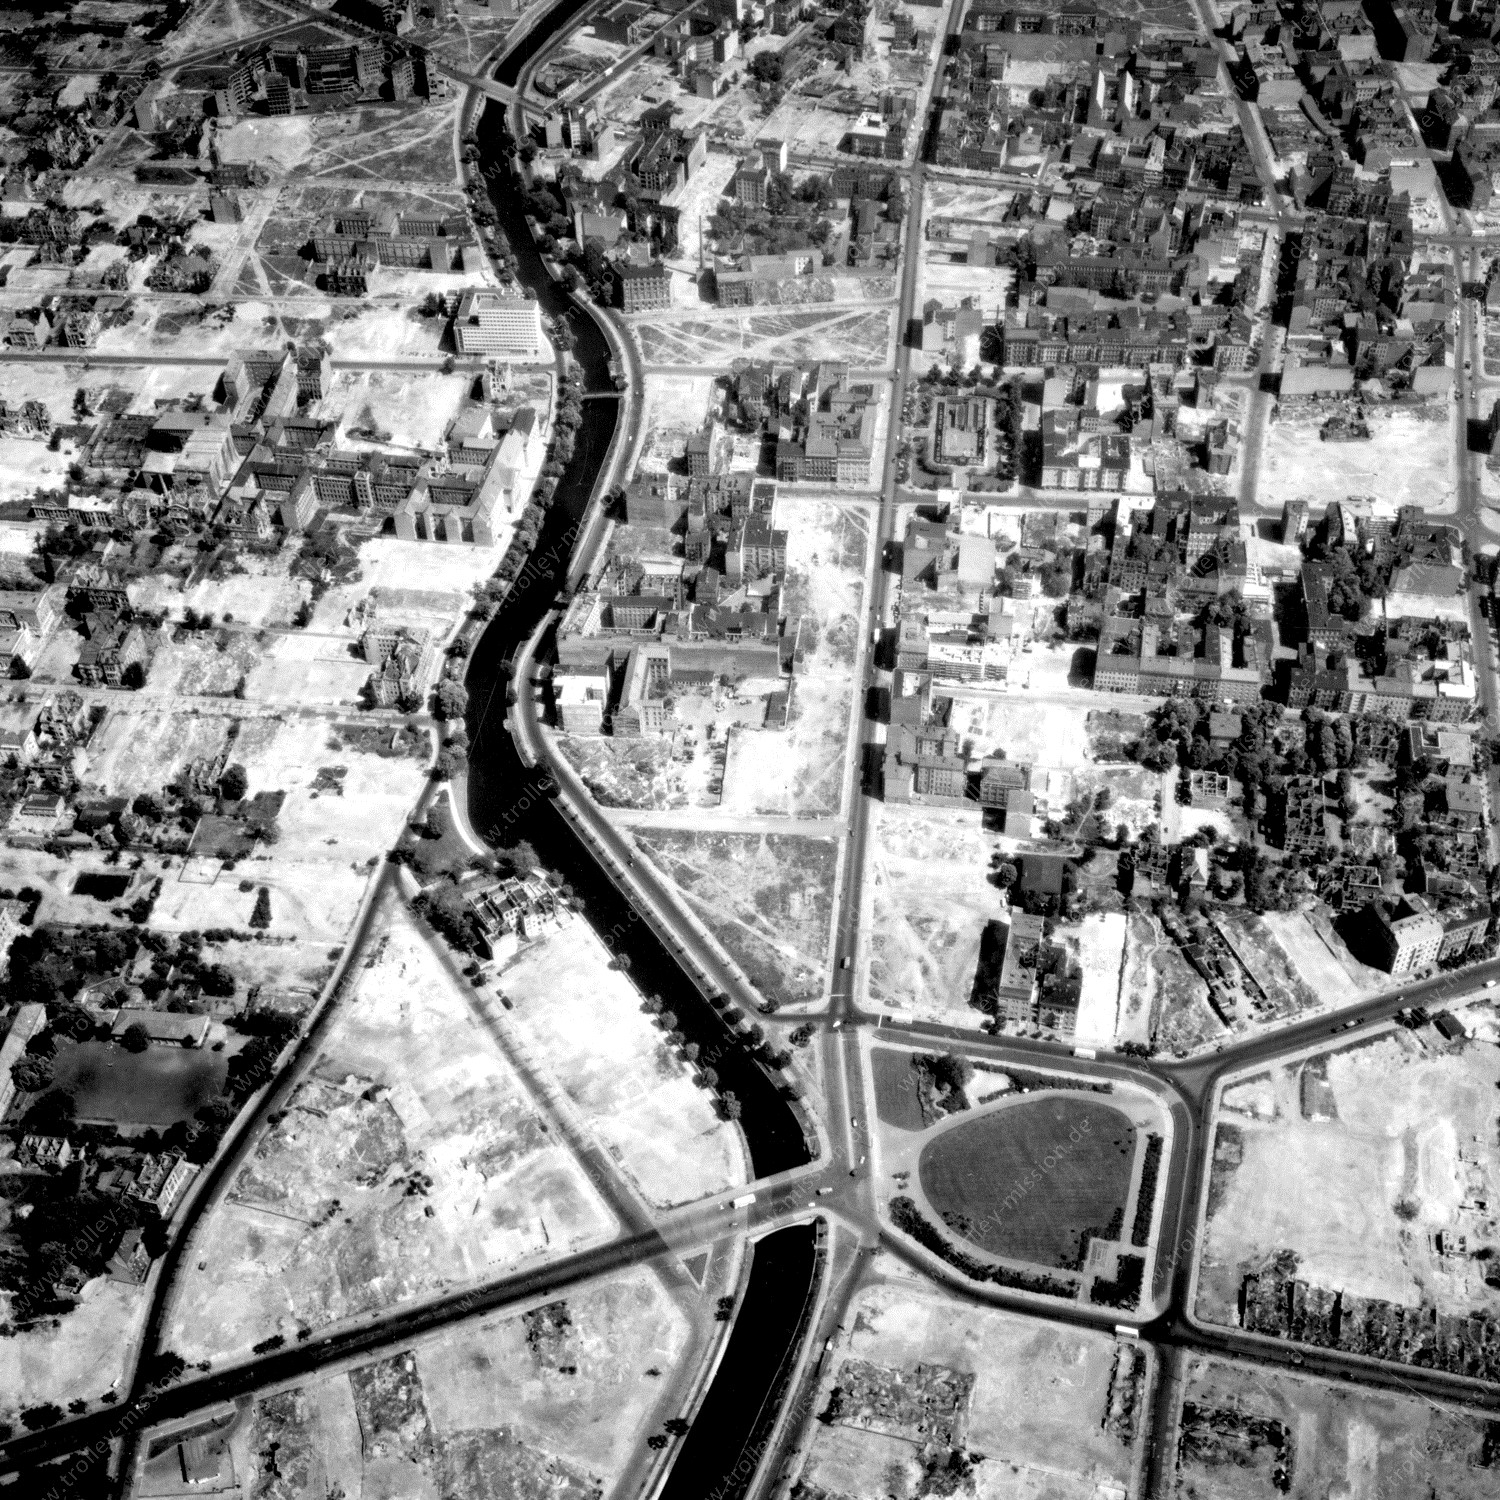 Alte Fotos und Luftbilder von Berlin - Luftbildaufnahme Nr. 10 - Historische Luftaufnahmen von West-Berlin aus dem Jahr 1954 - Flugstrecke Golf